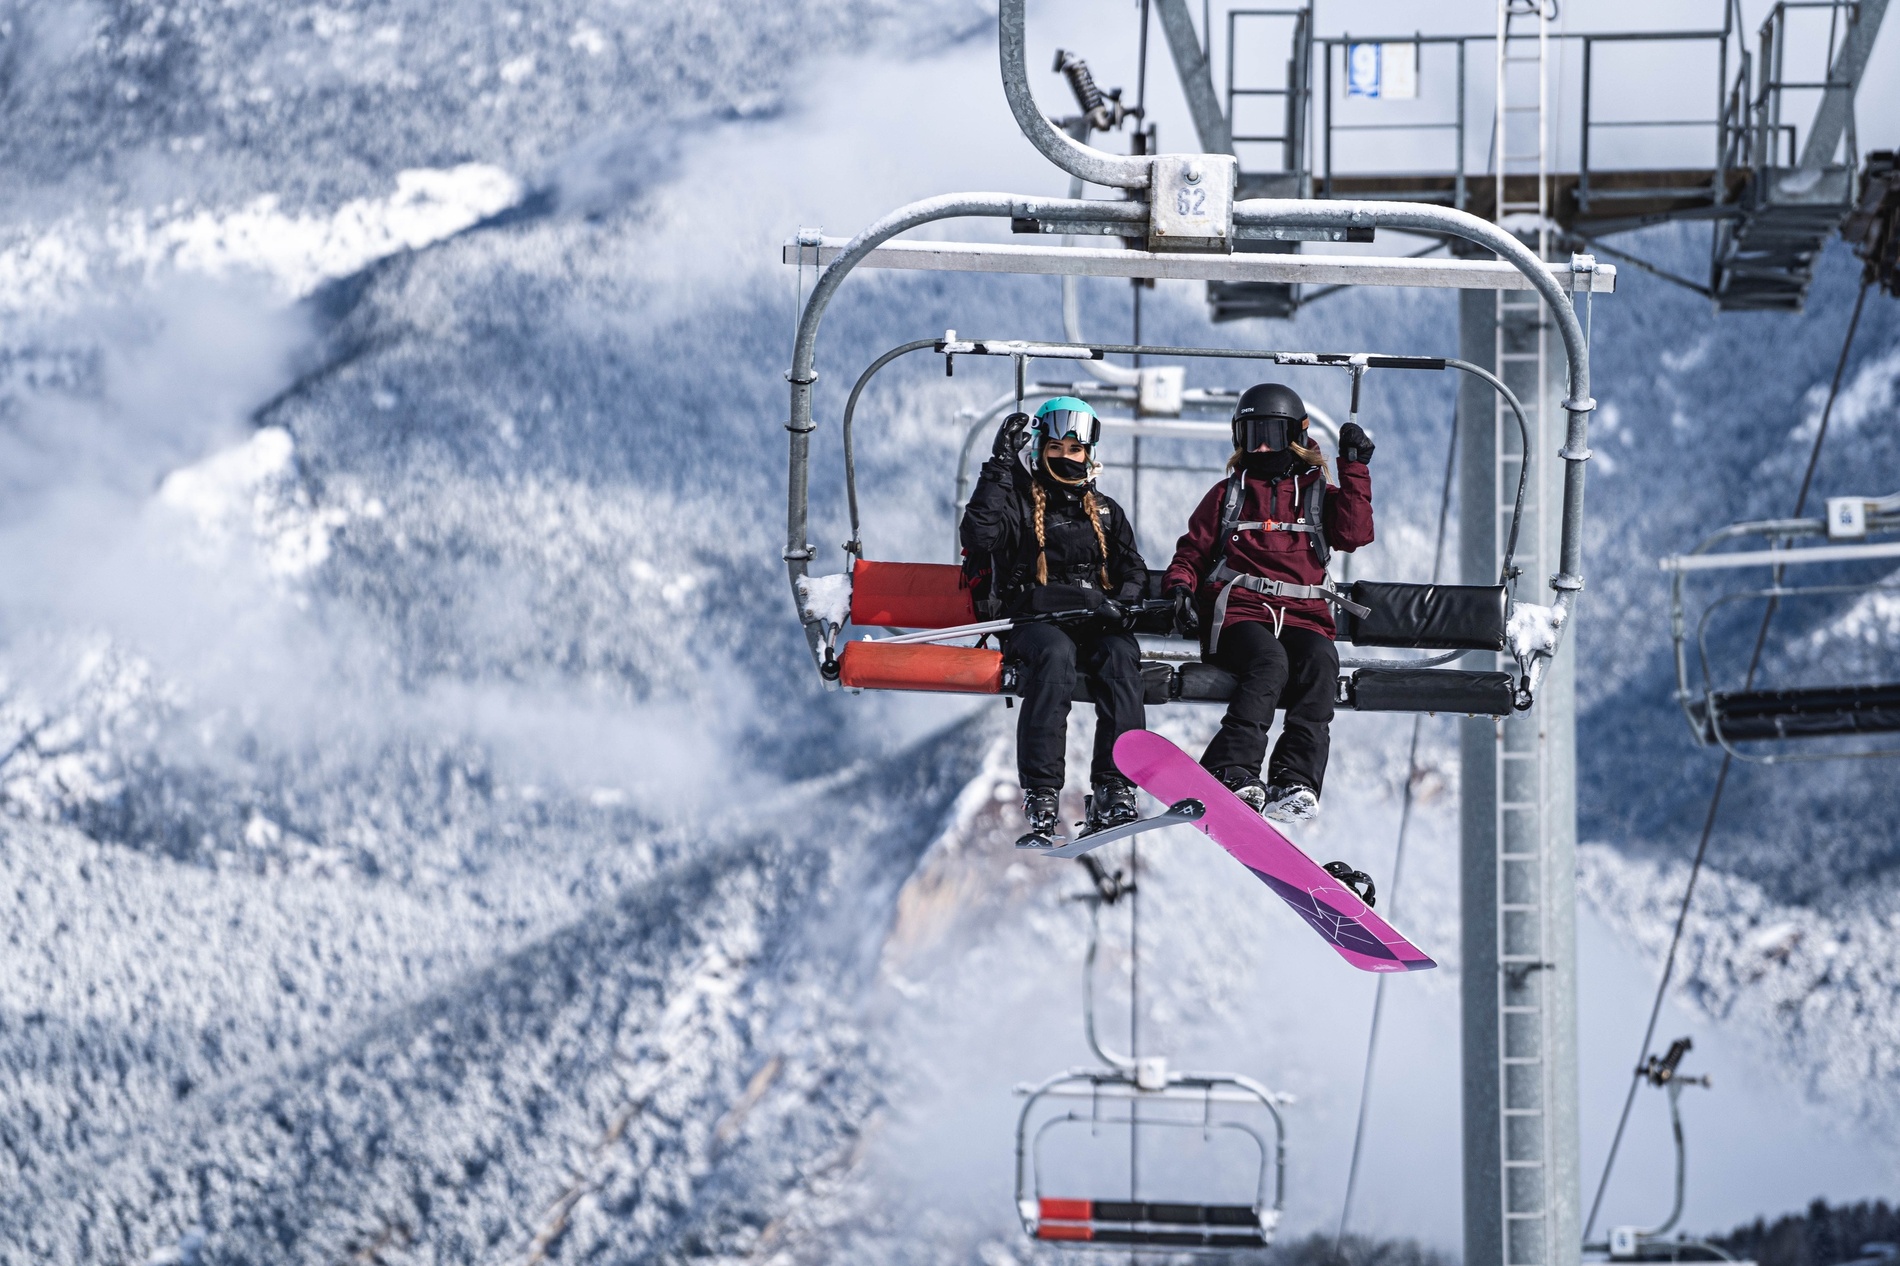 dos snowboarders s'hi acosten en un ascensor a la montagna